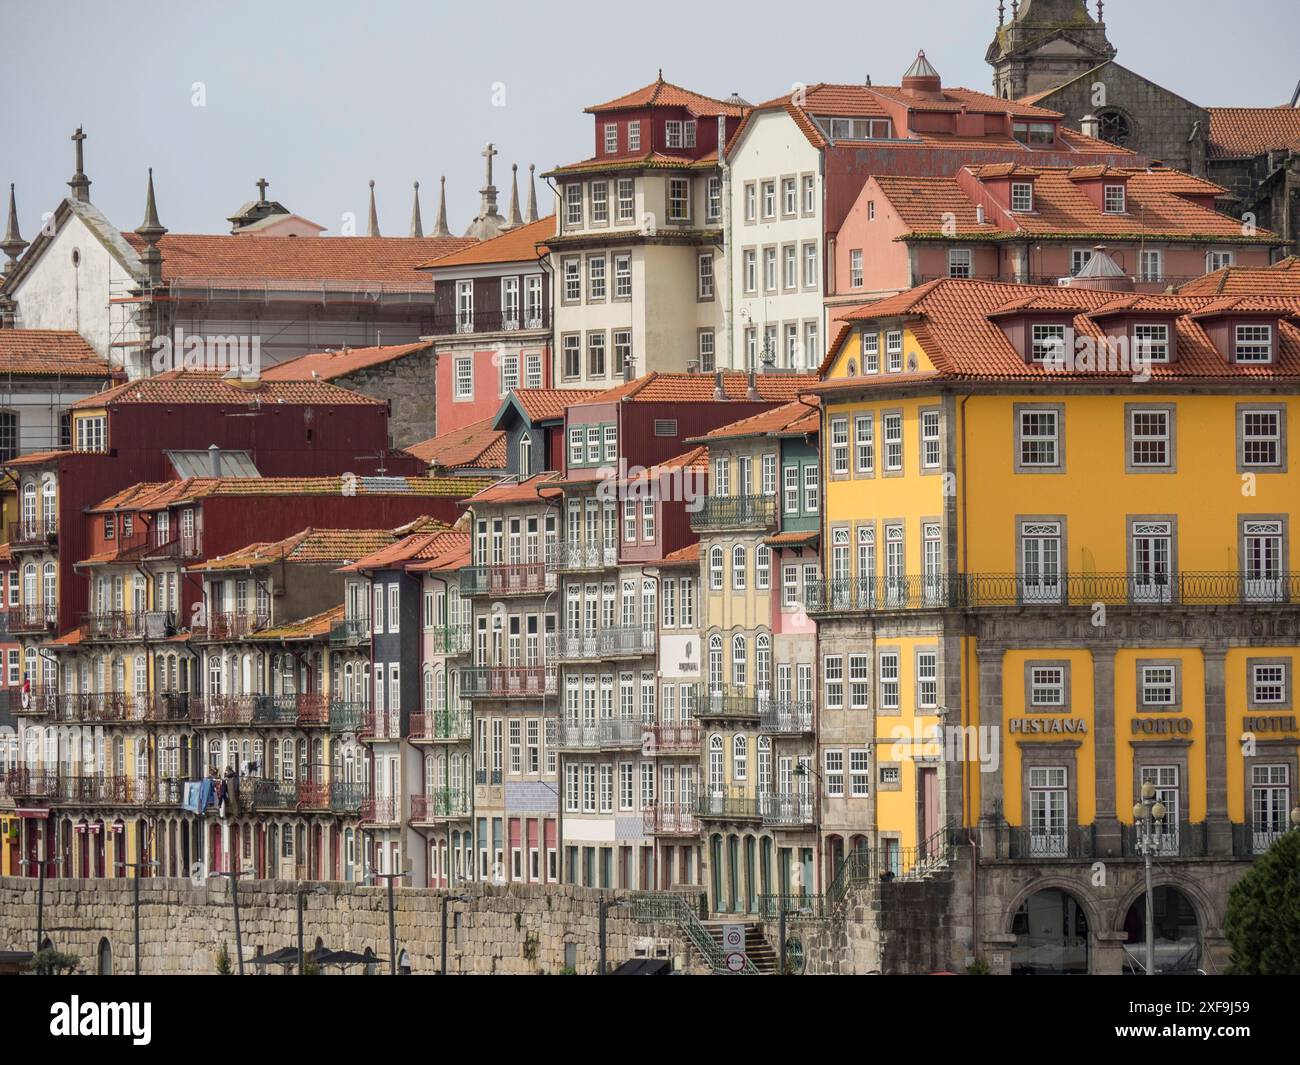 Case colorate allineate tra loro in un centro storico con molte finestre e tetti, porto, portogallo Foto Stock